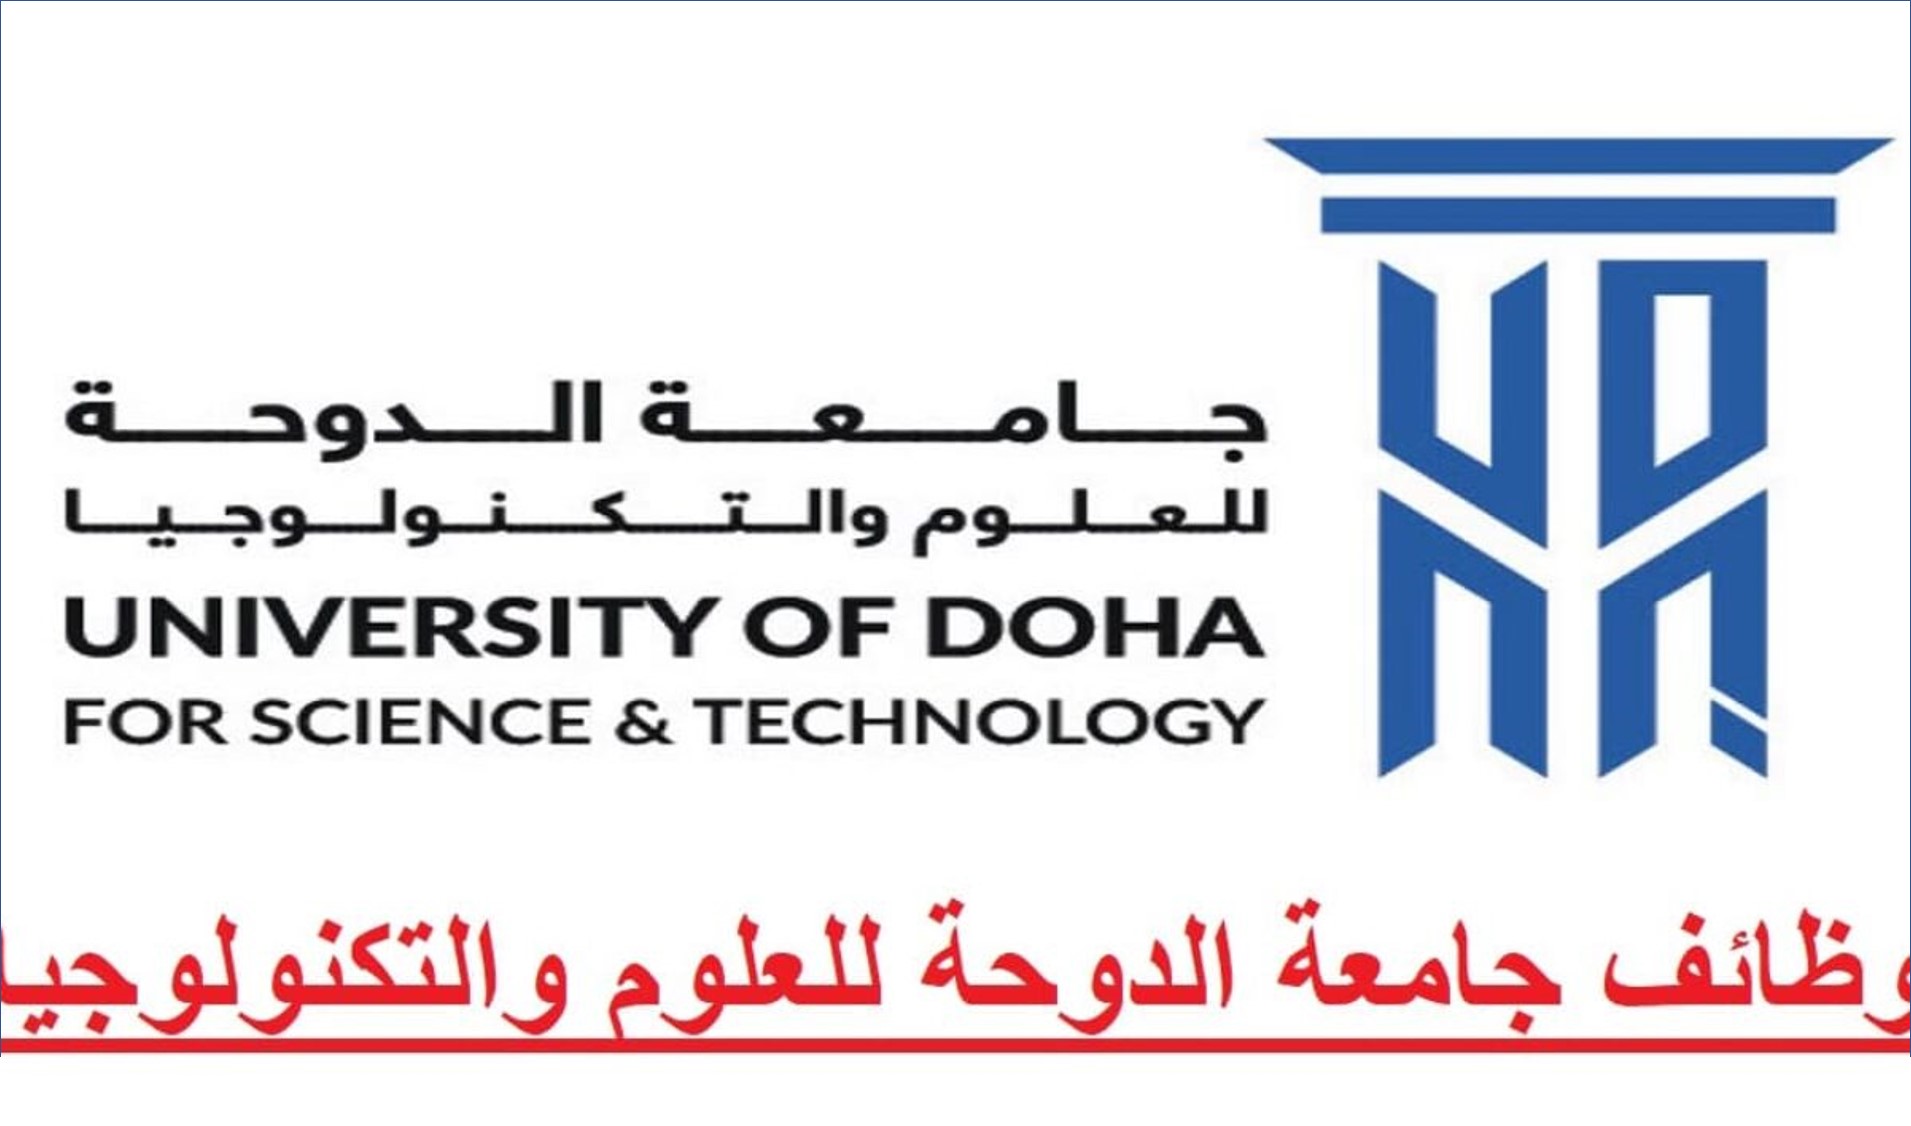 جامعة الدوحة للعلوم والتكنولوجيا تعلن عن وظائف للرجال والنساء